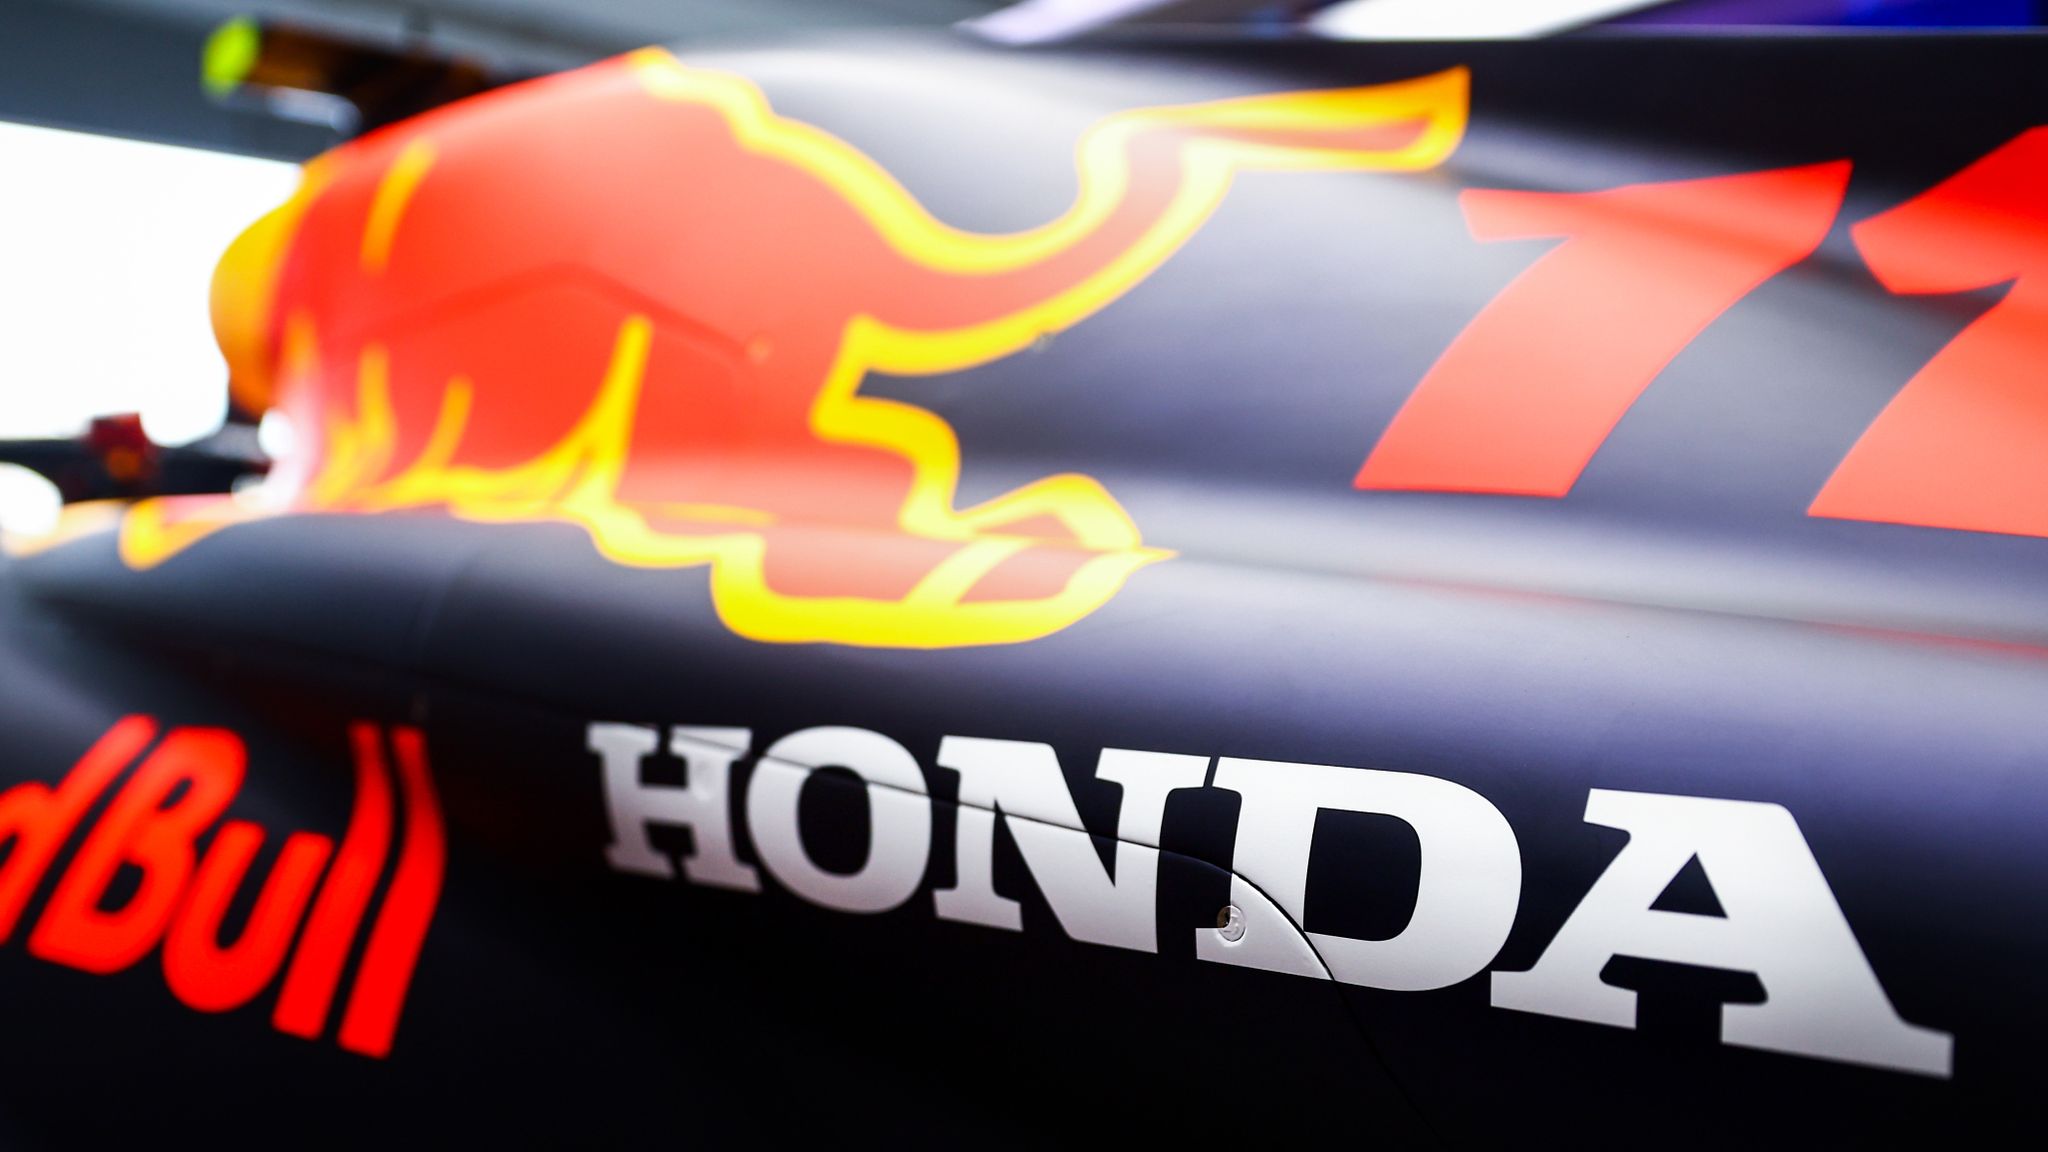 Red Bull and Honda target new engine for Verstappen